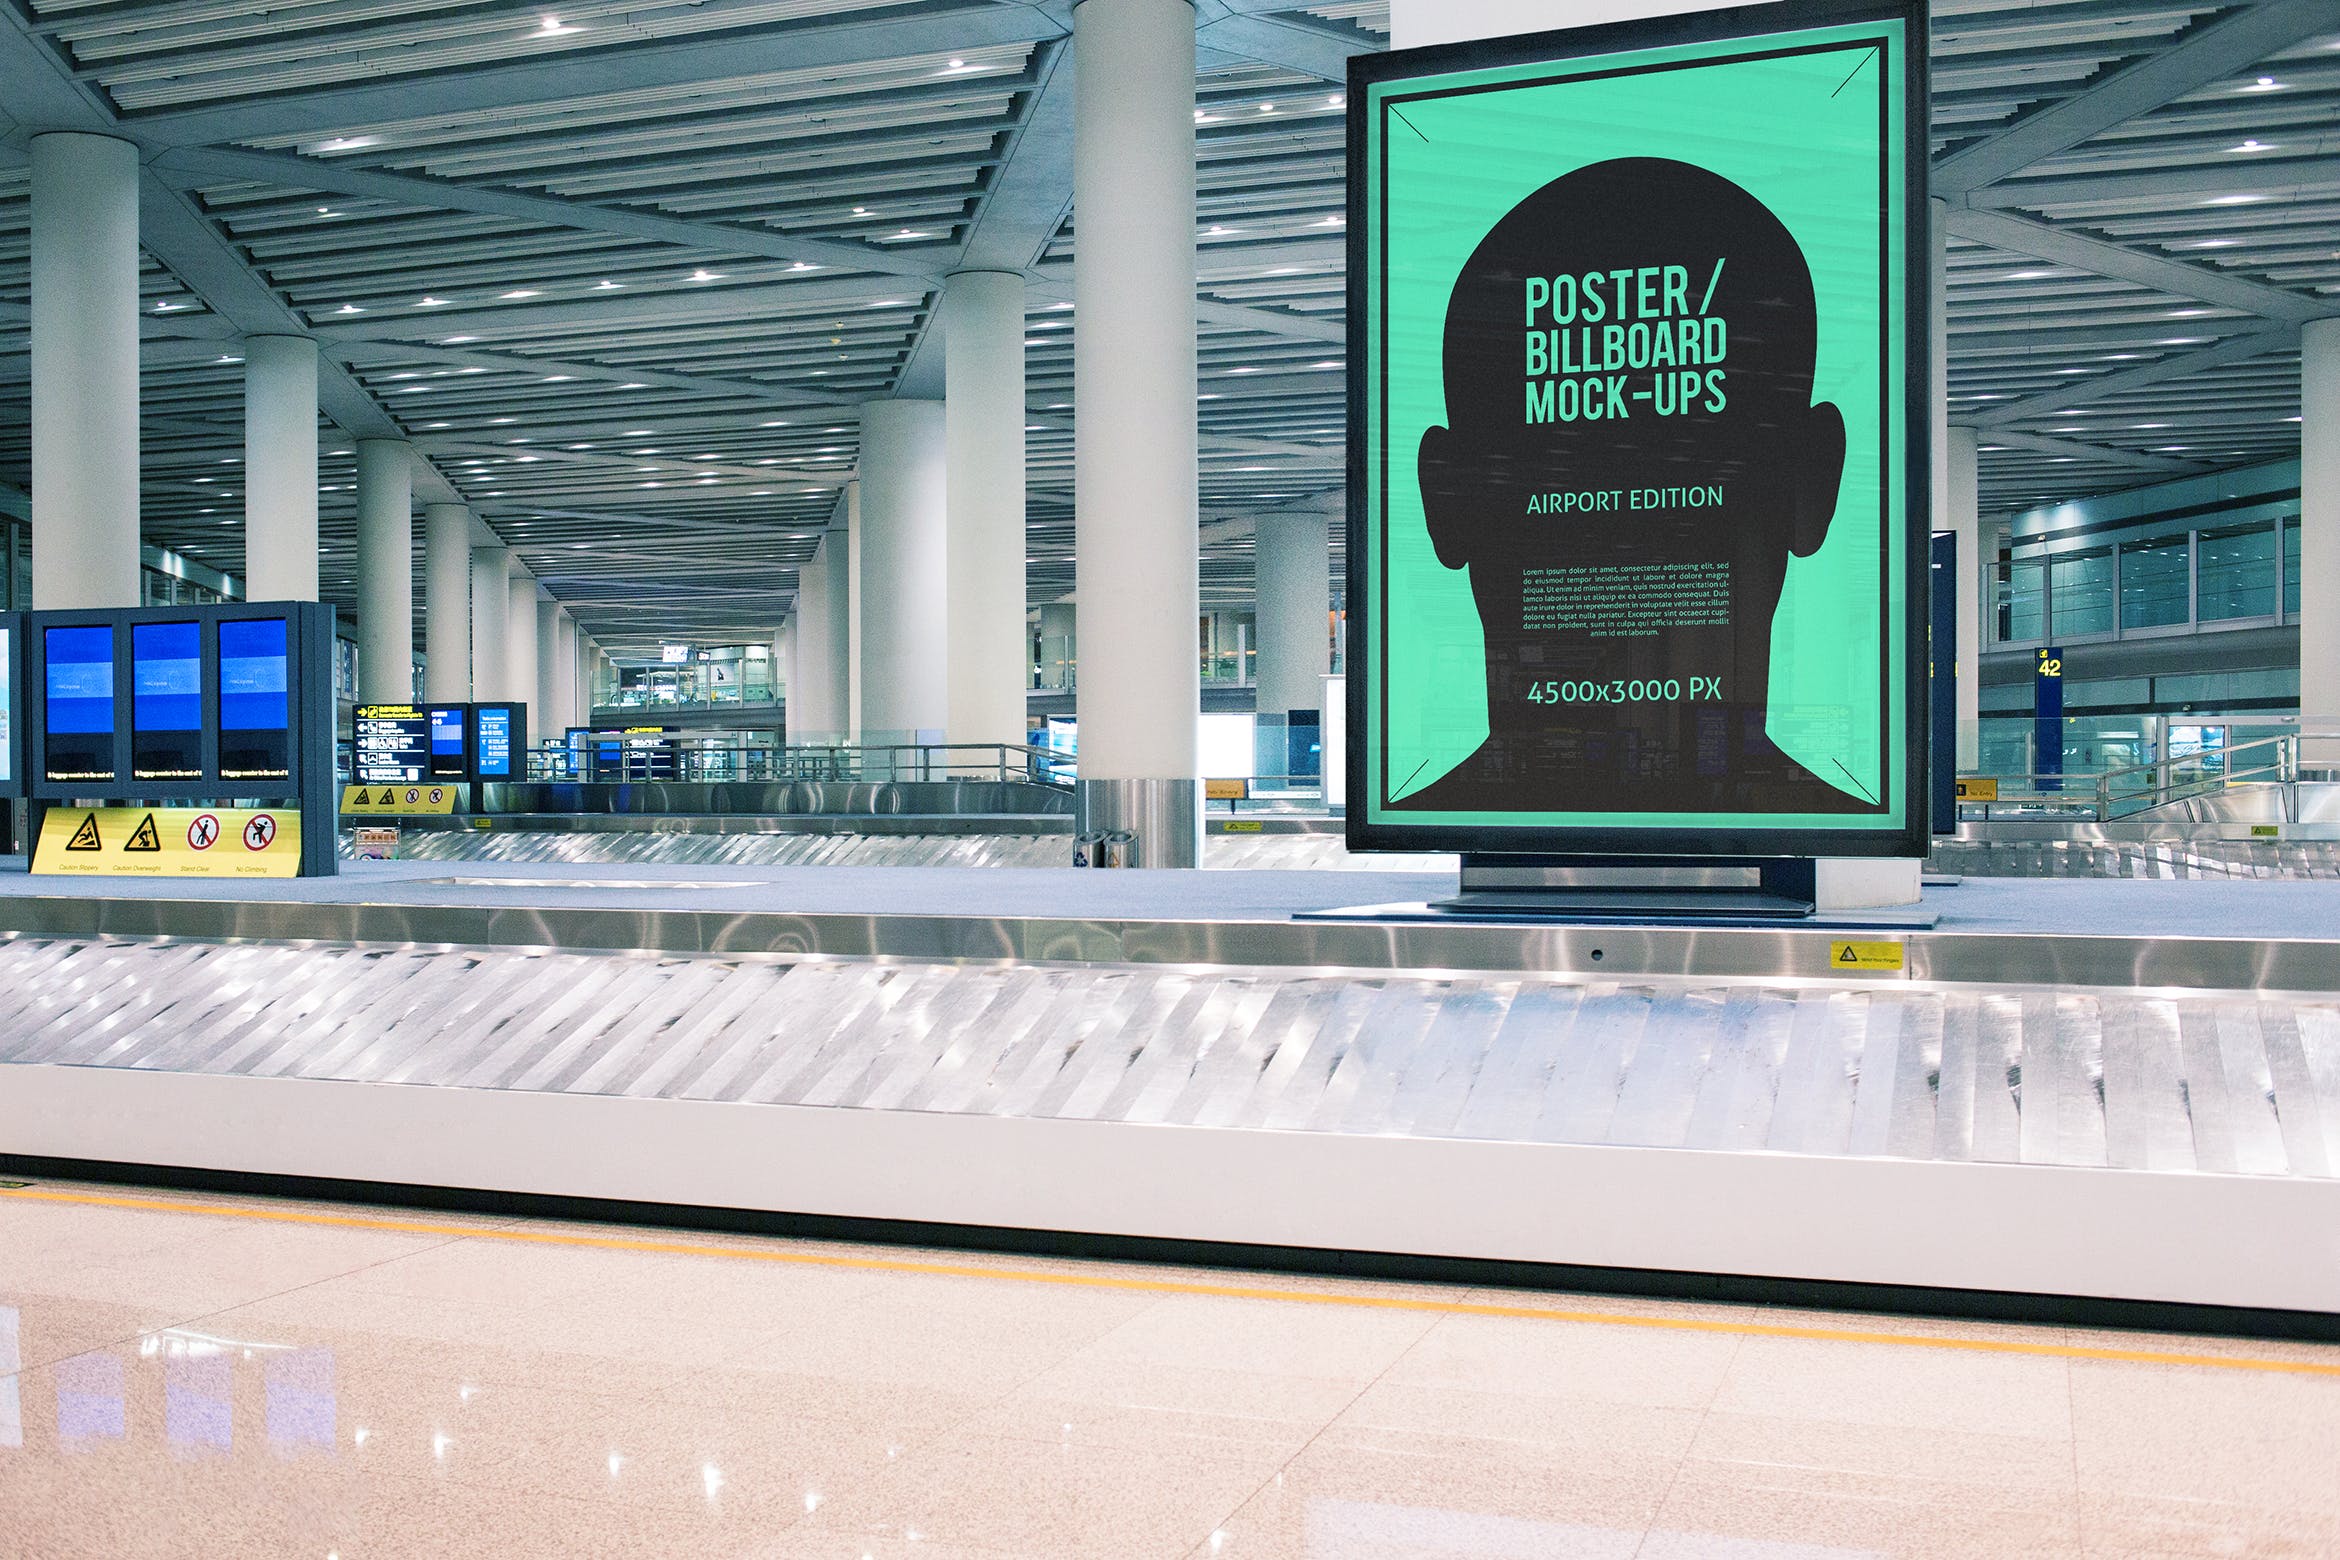 机场候机室海报/广告牌样机蚂蚁素材精选模板#8 Poster / Billboard Mock-ups – Airport Edition #8插图